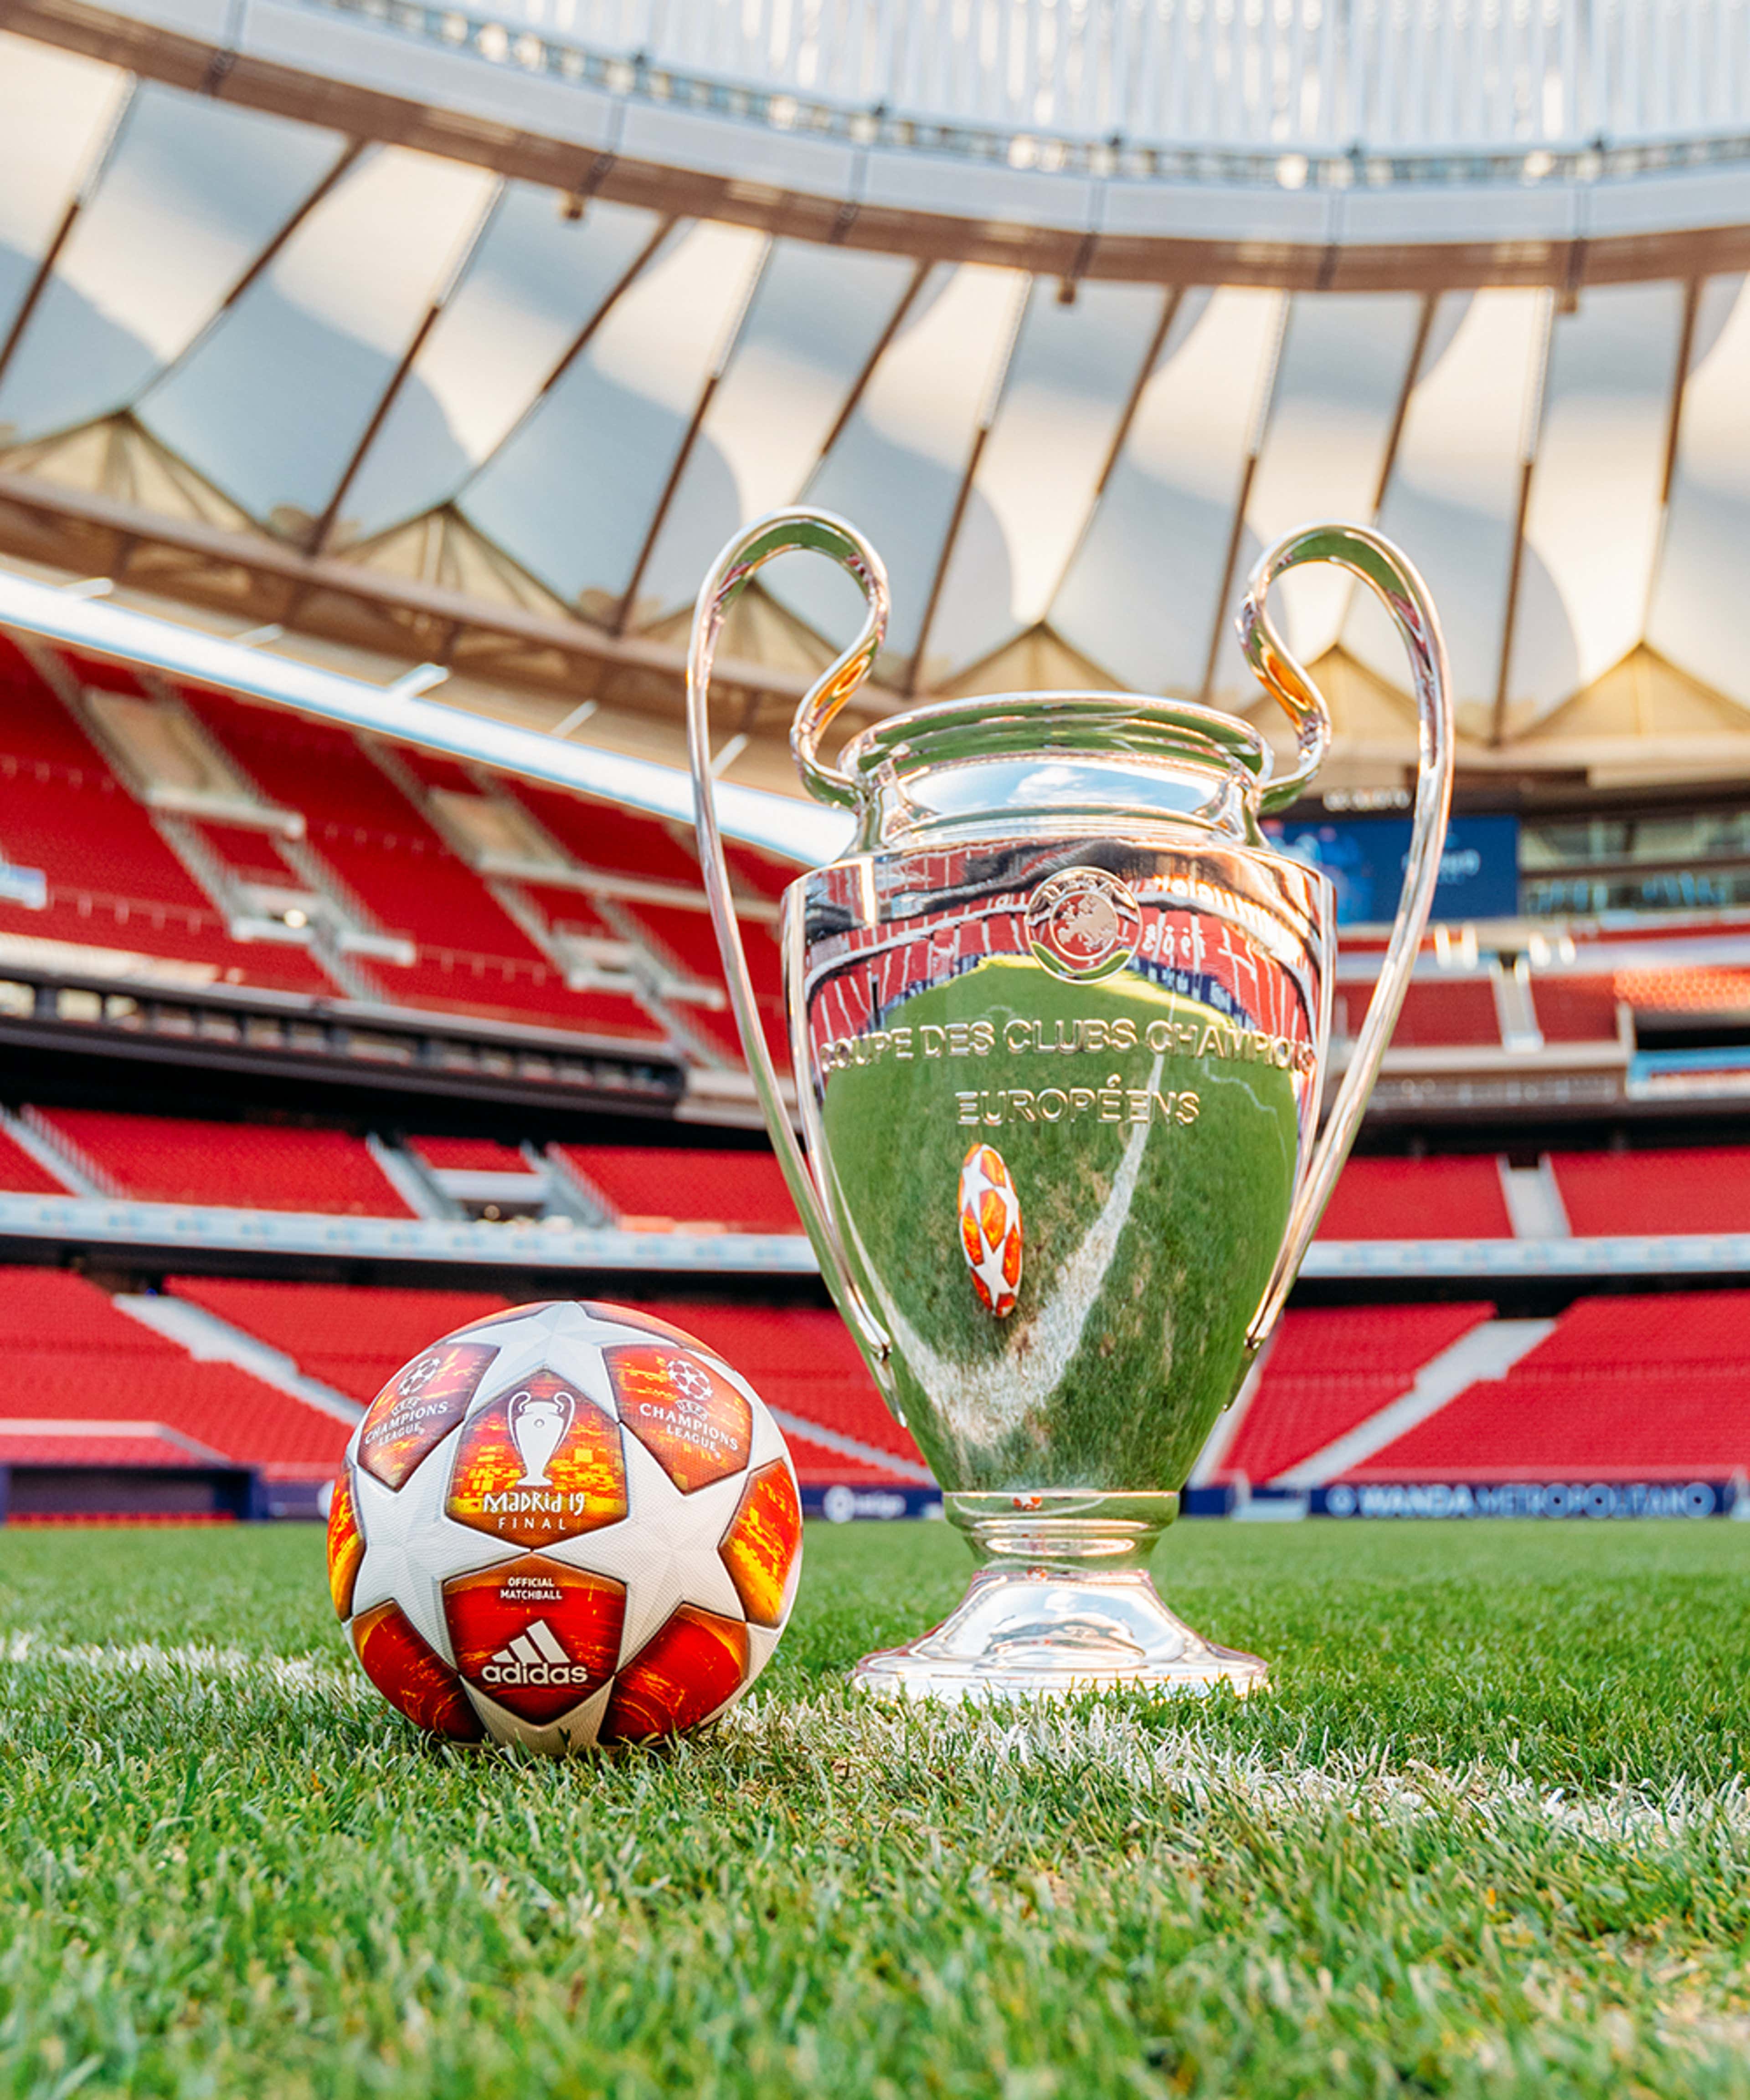 Ligue des champions : adidas dévoile le ballon de la finale 2019